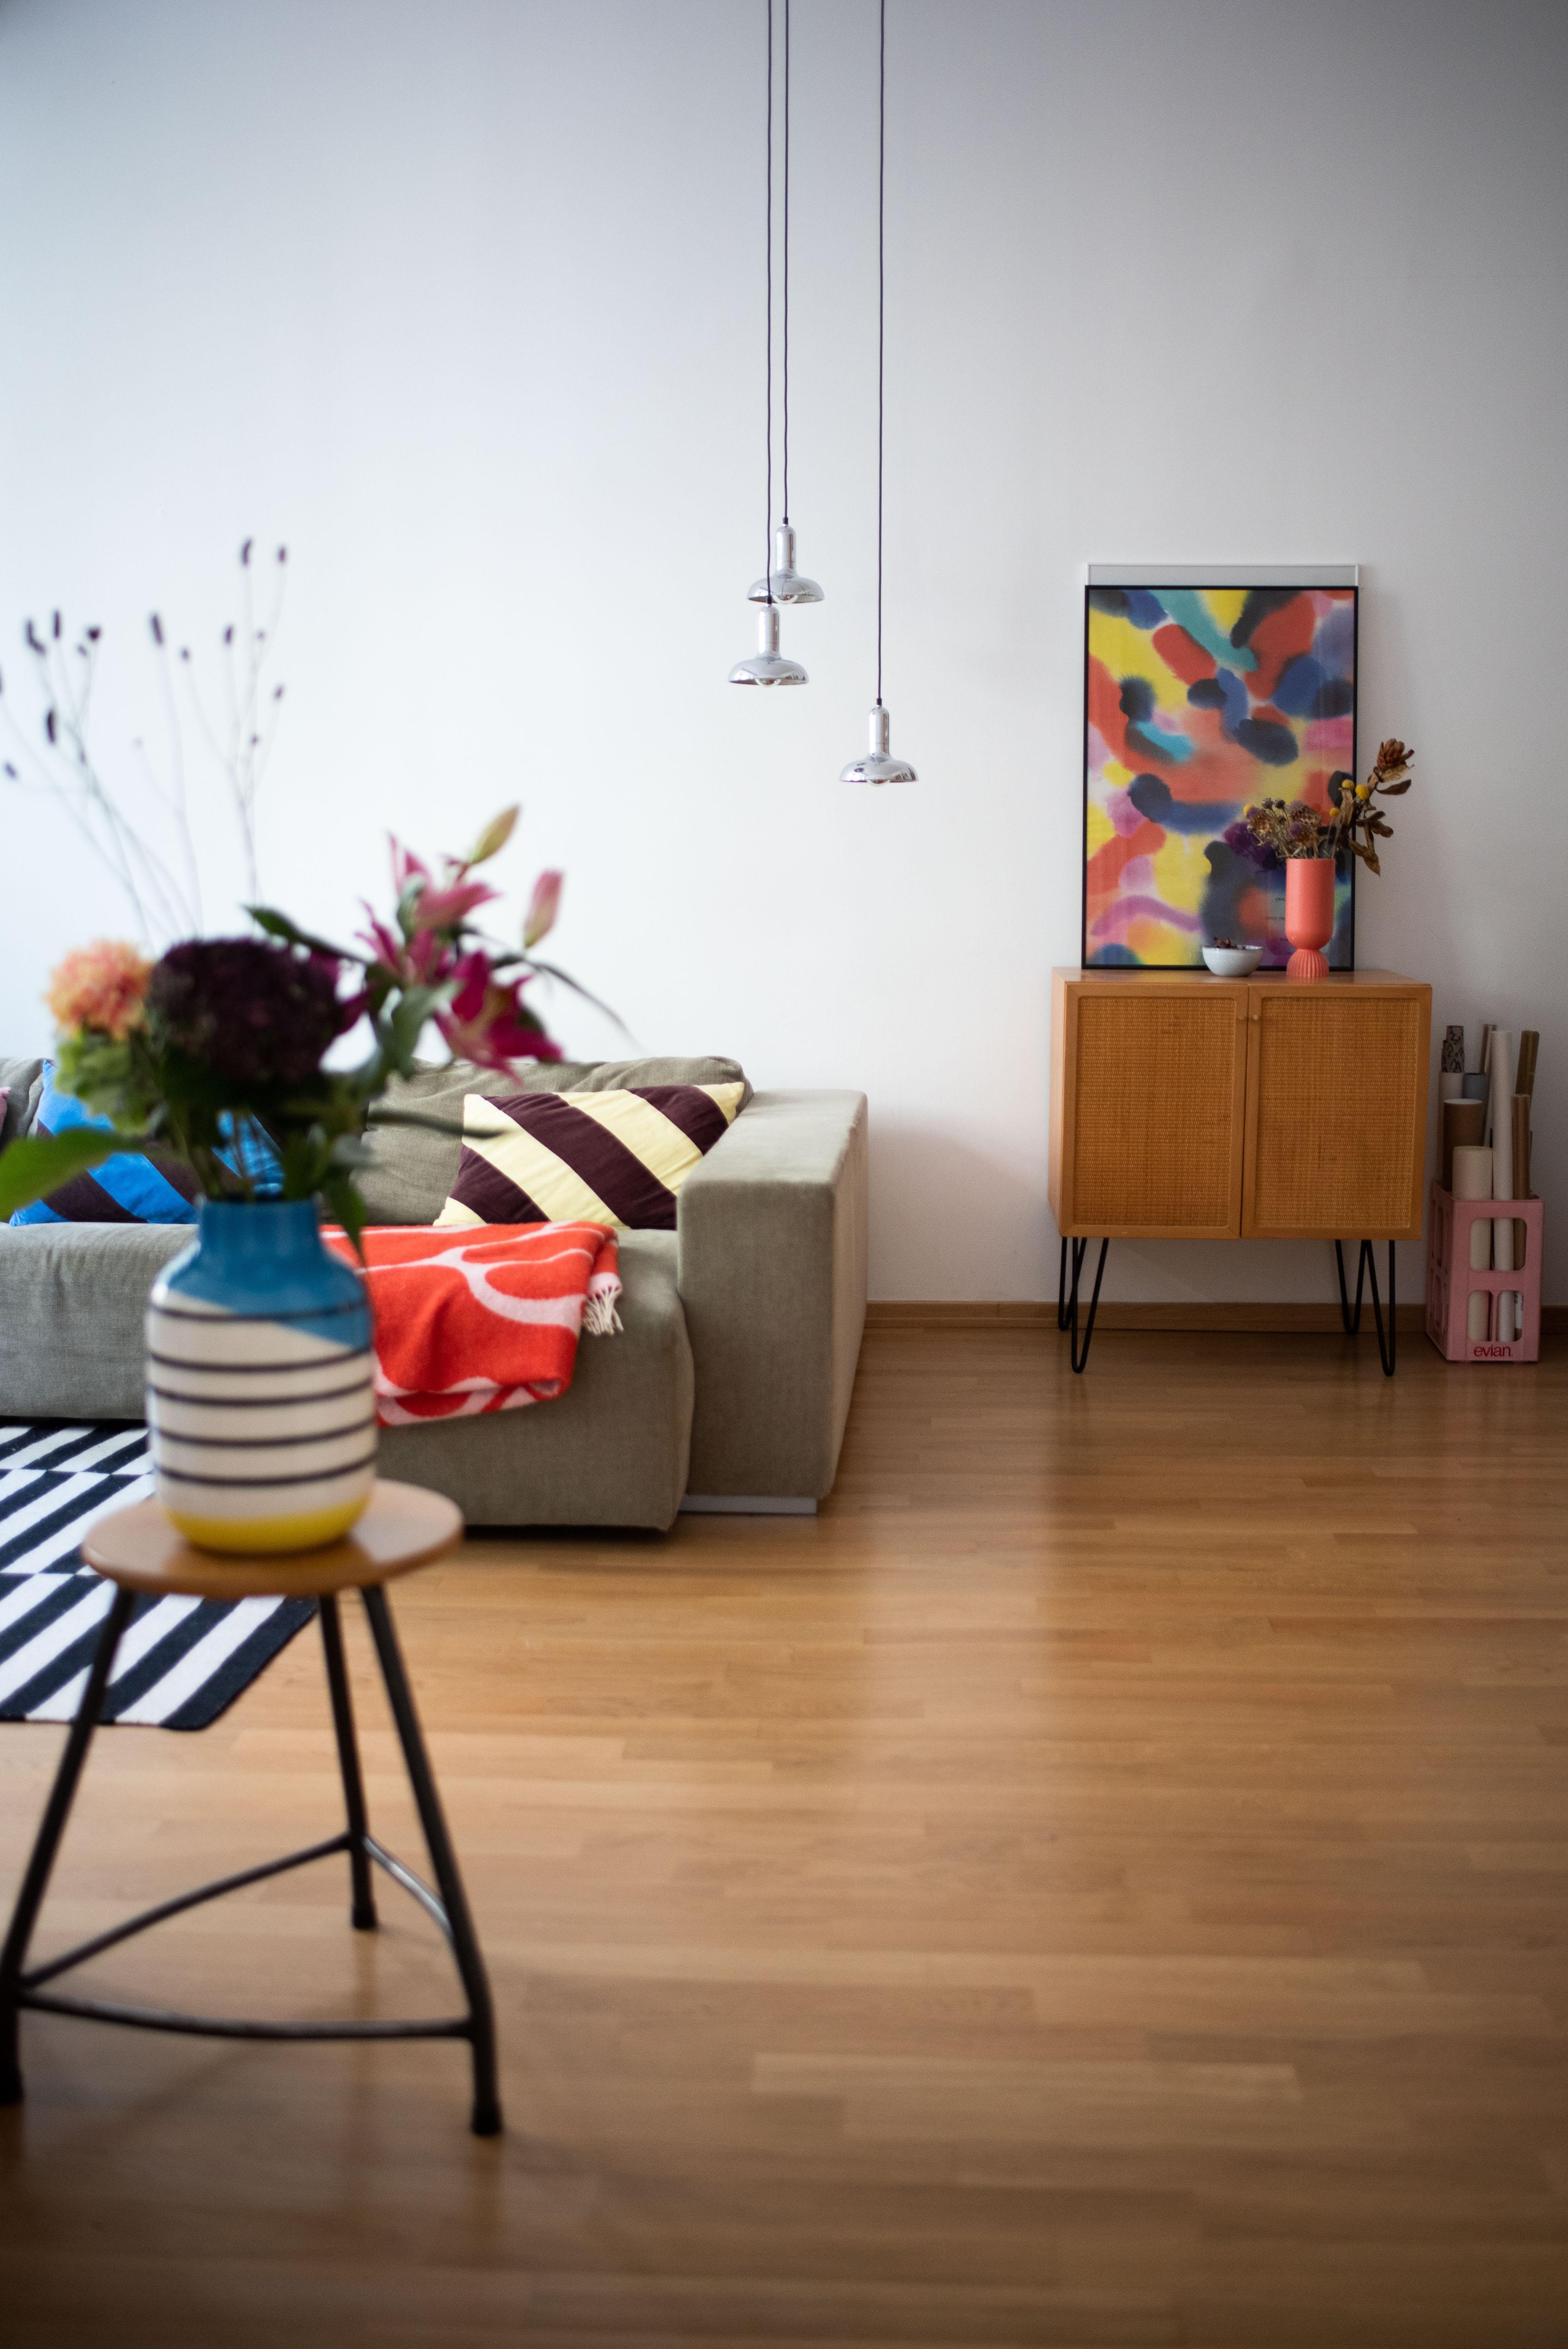 Schönen Dienstag! #buntesinterior #wohnzimmer #interiorinspo #interiordesign #livingroom #altbau